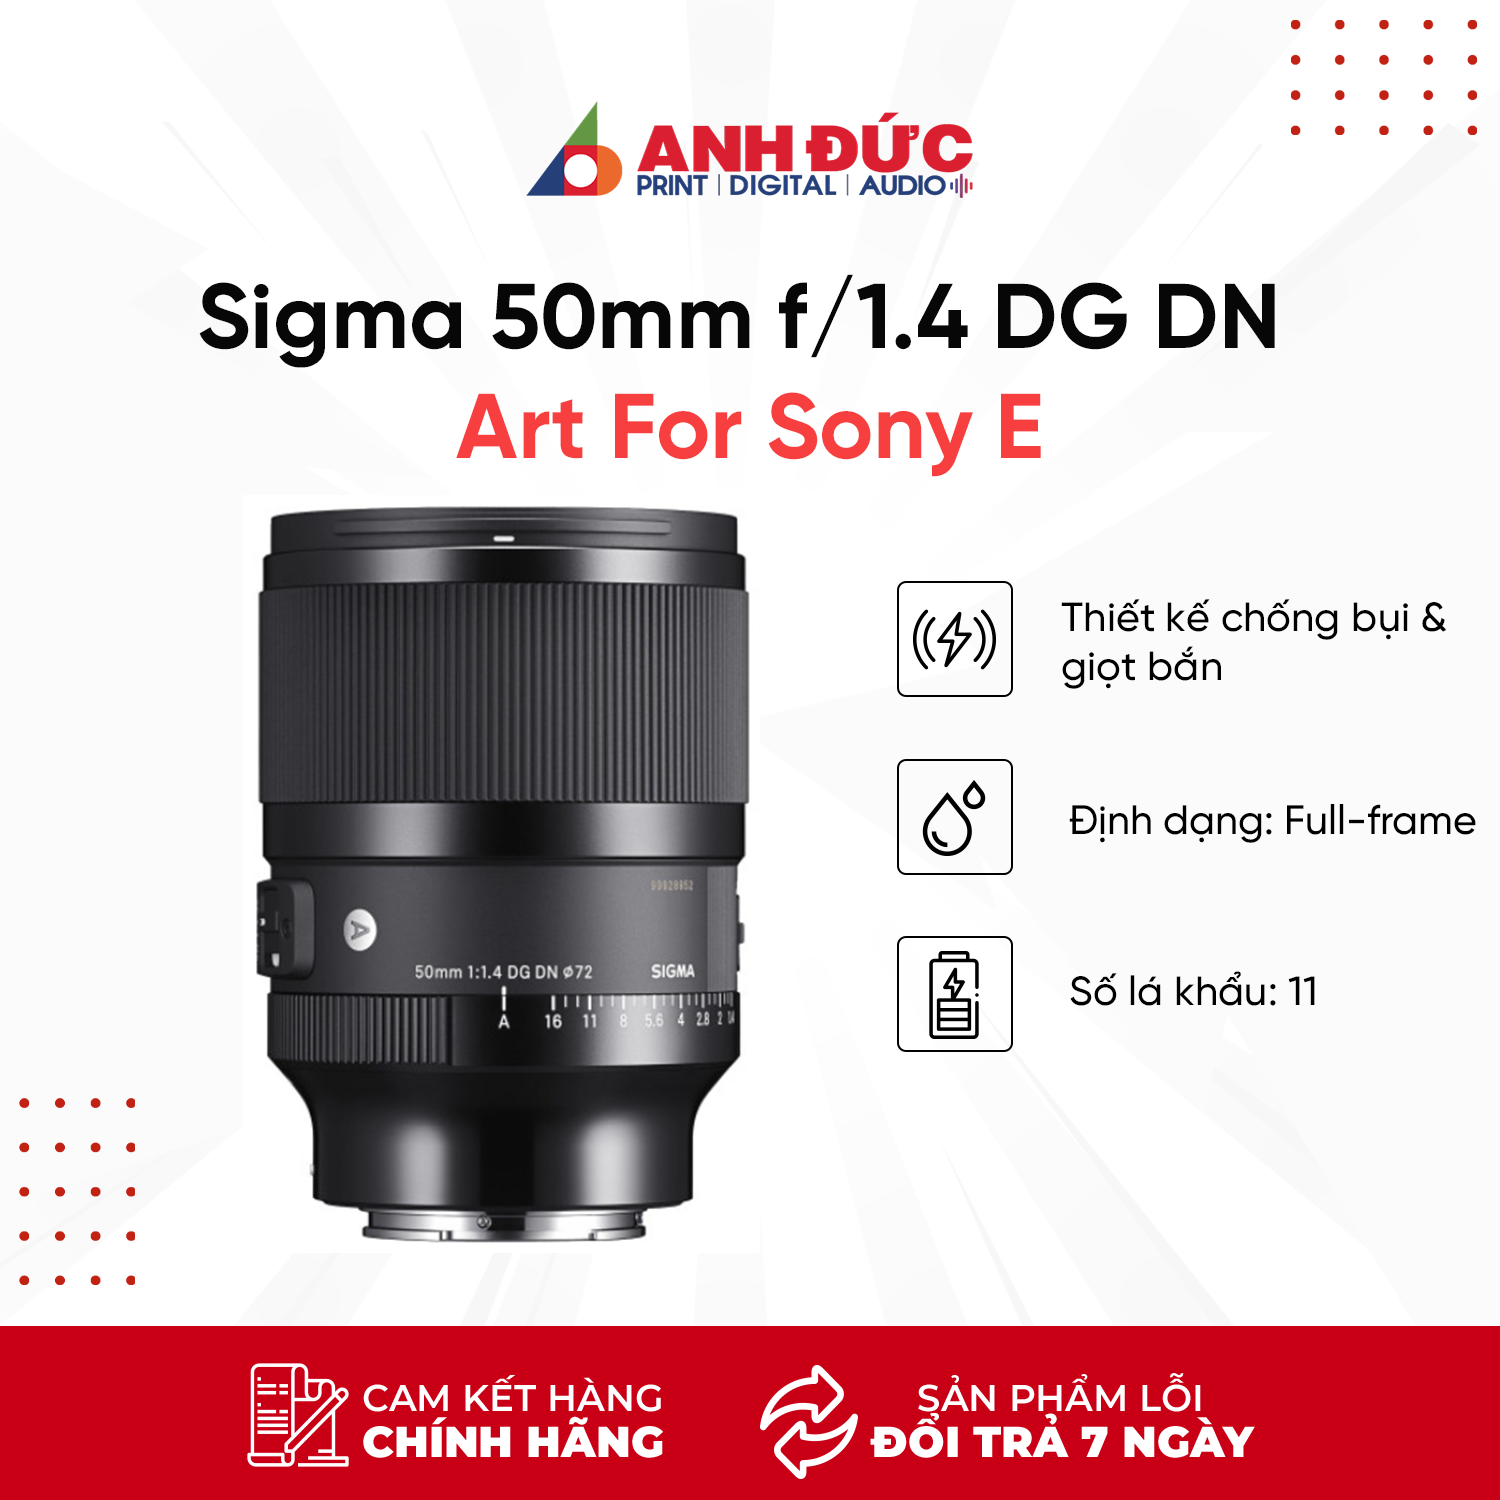 Ống kính Sigma 50mm f/1.4 DG DN Art For Sony E - Hàng chính hãng